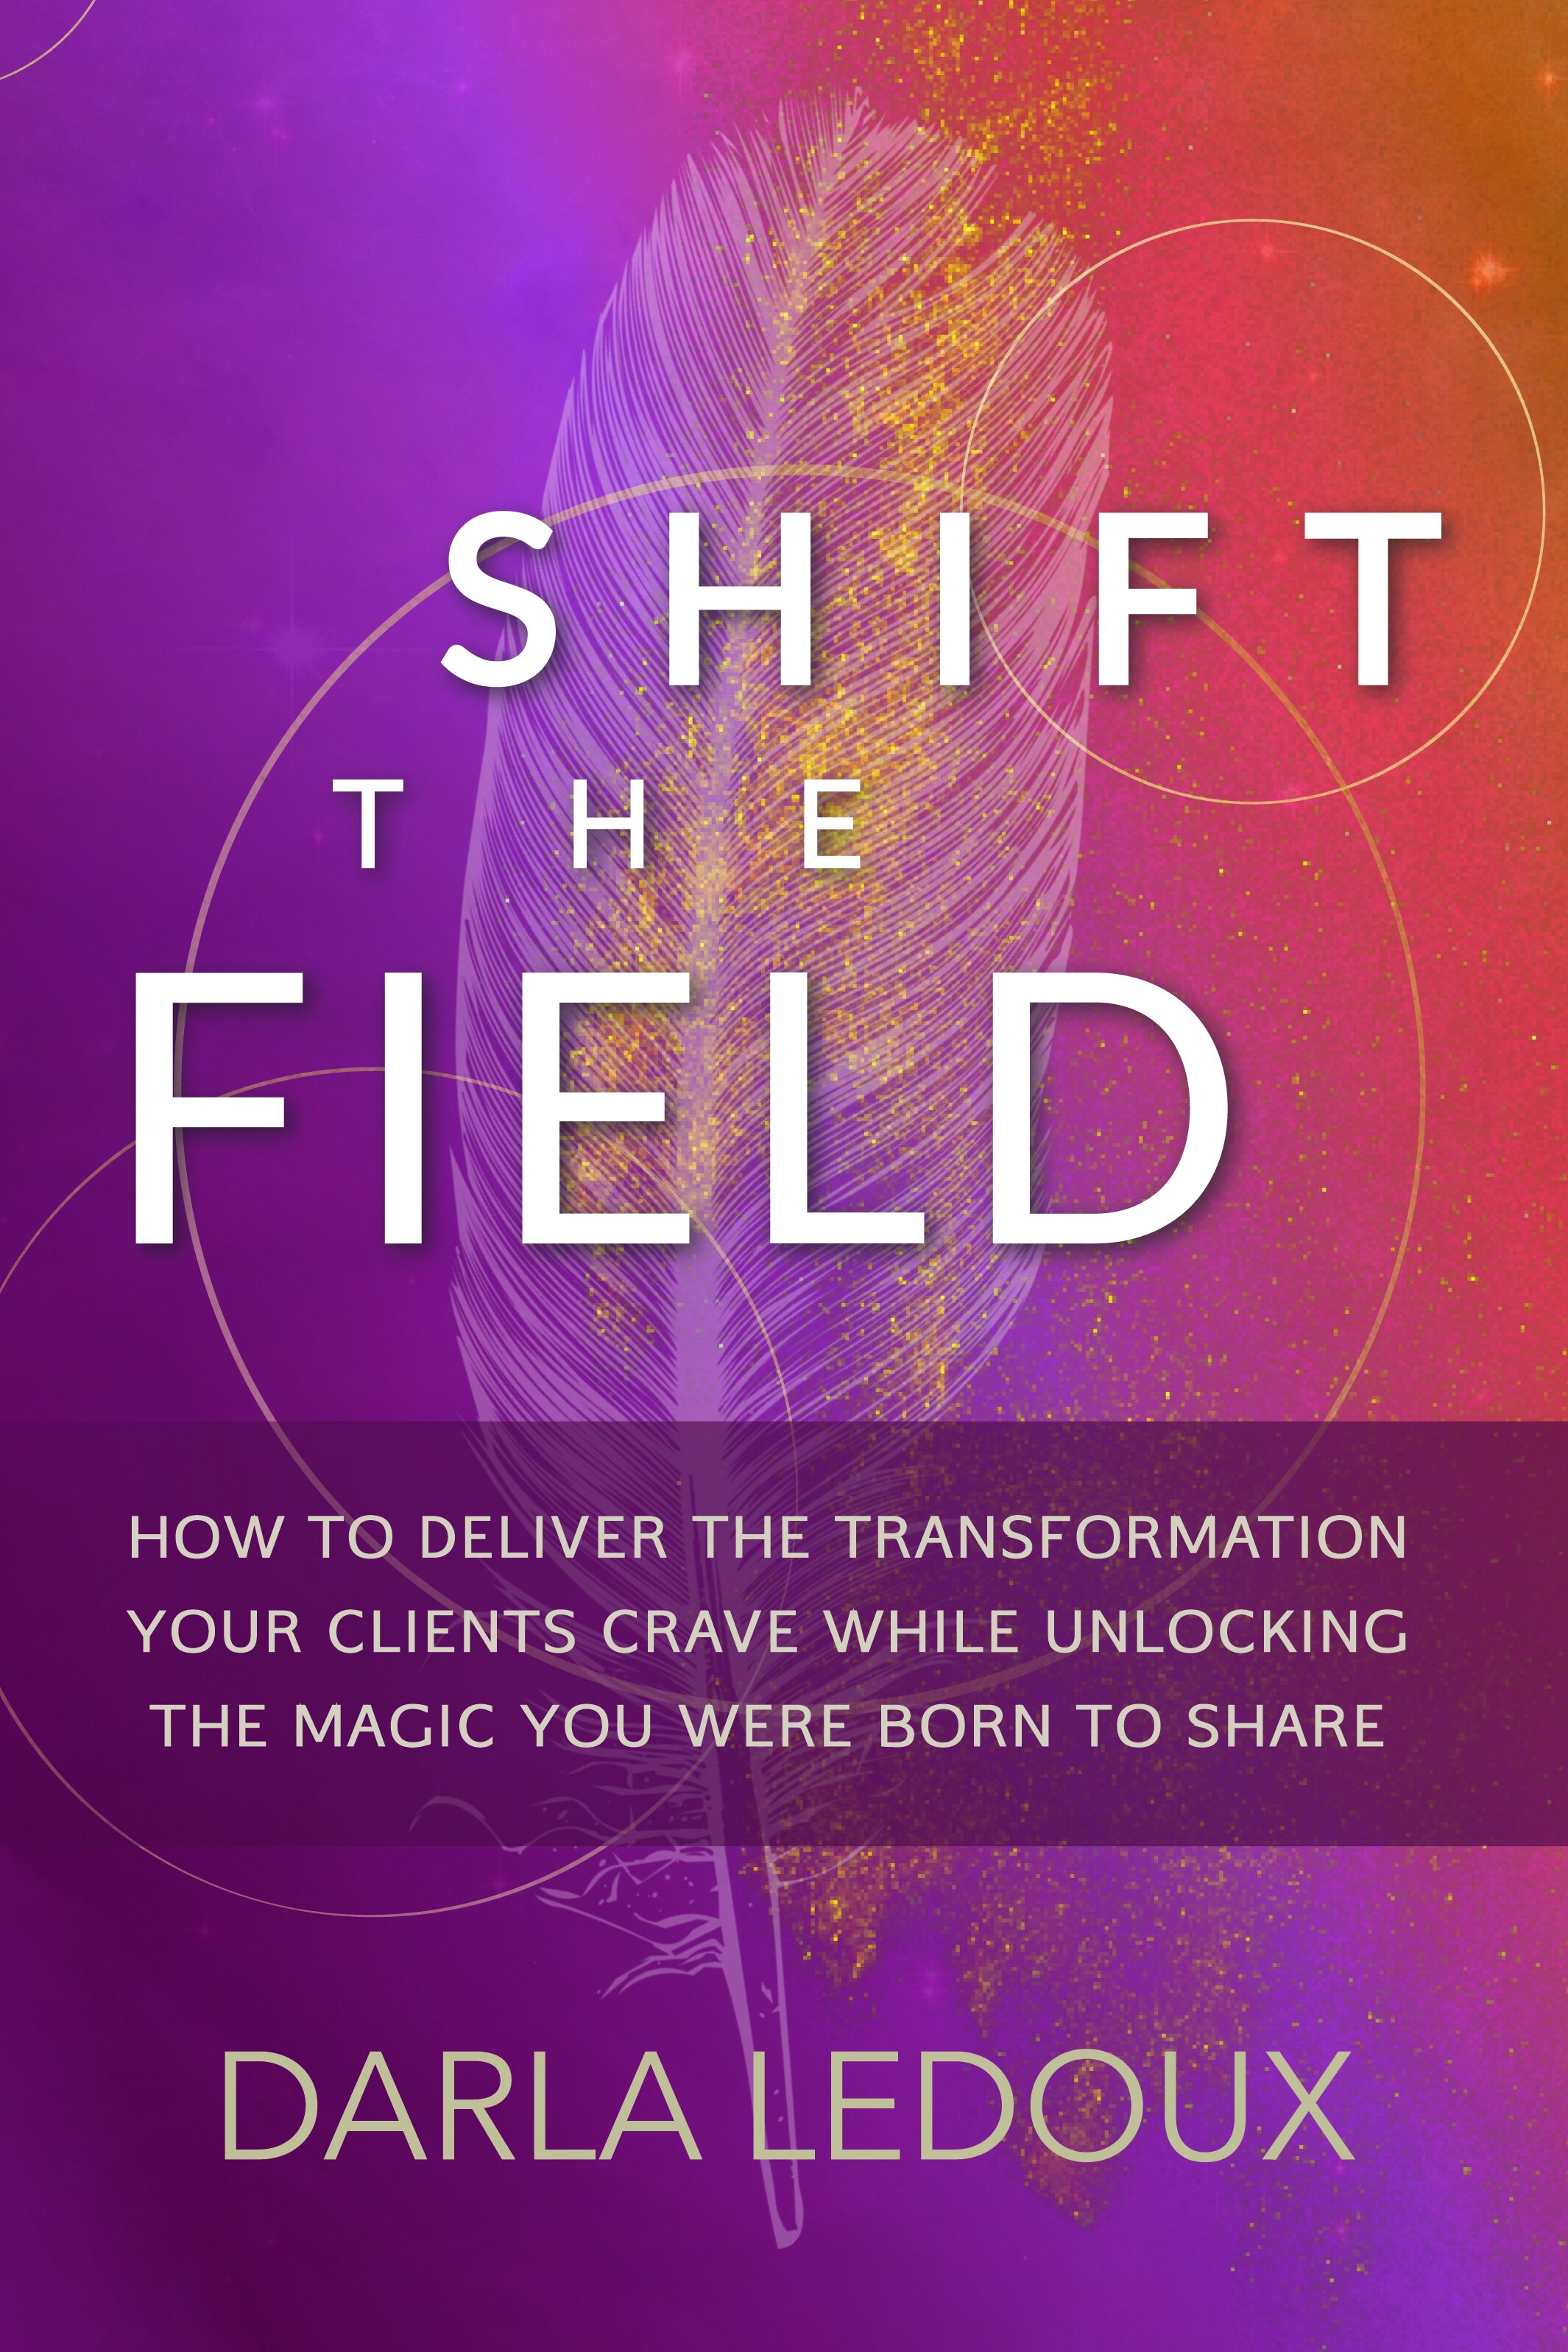 Shift the Field by Darla LeDoux